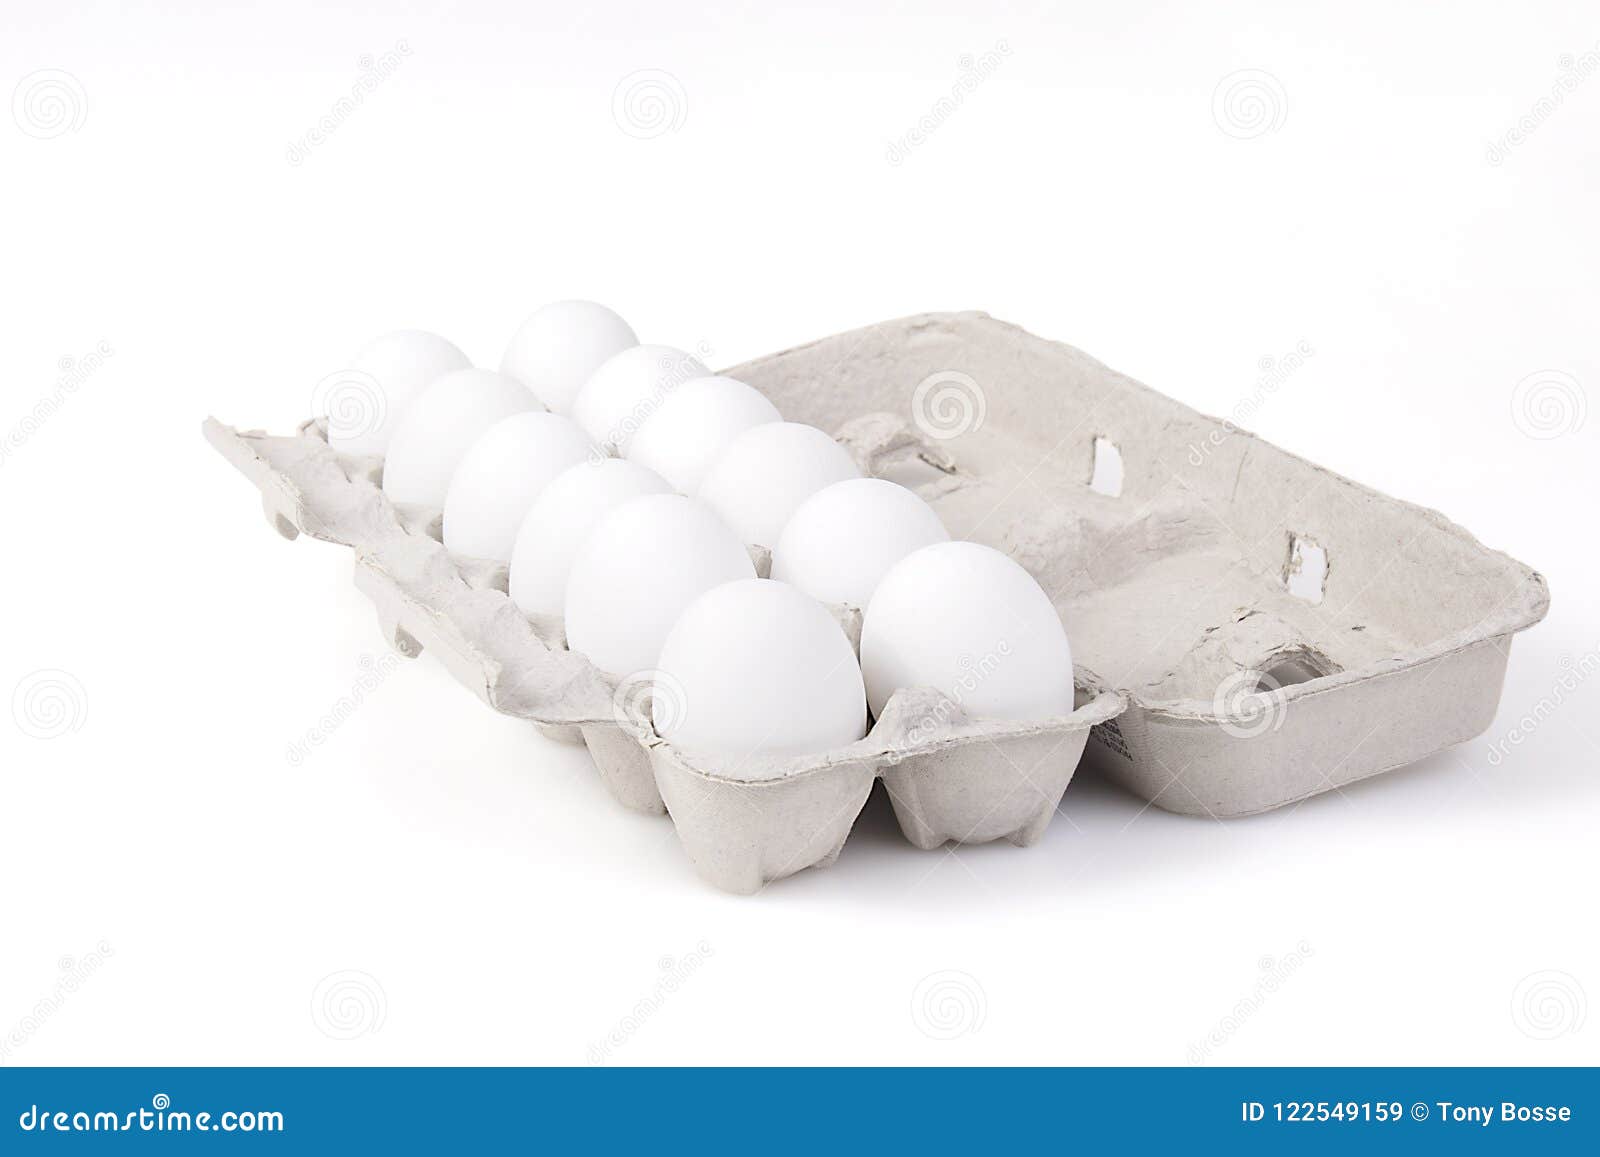 Dutzend Eier In Einem Karton Stockbild Bild Von Karton Dutzend